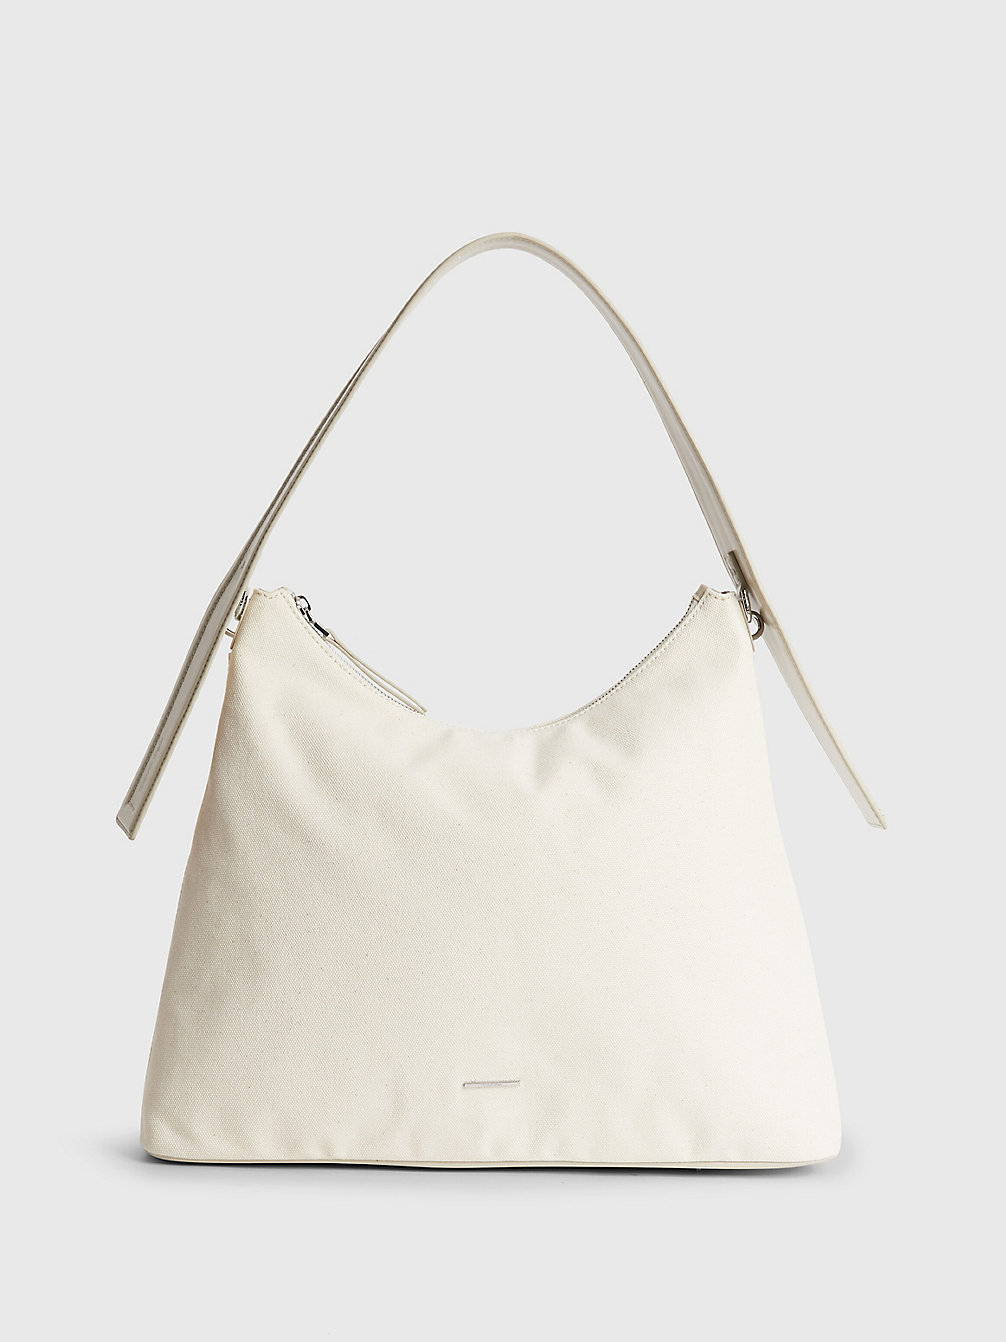 STONEY BEIGE Sustainable Canvas Shoulder Bag undefined women Calvin Klein